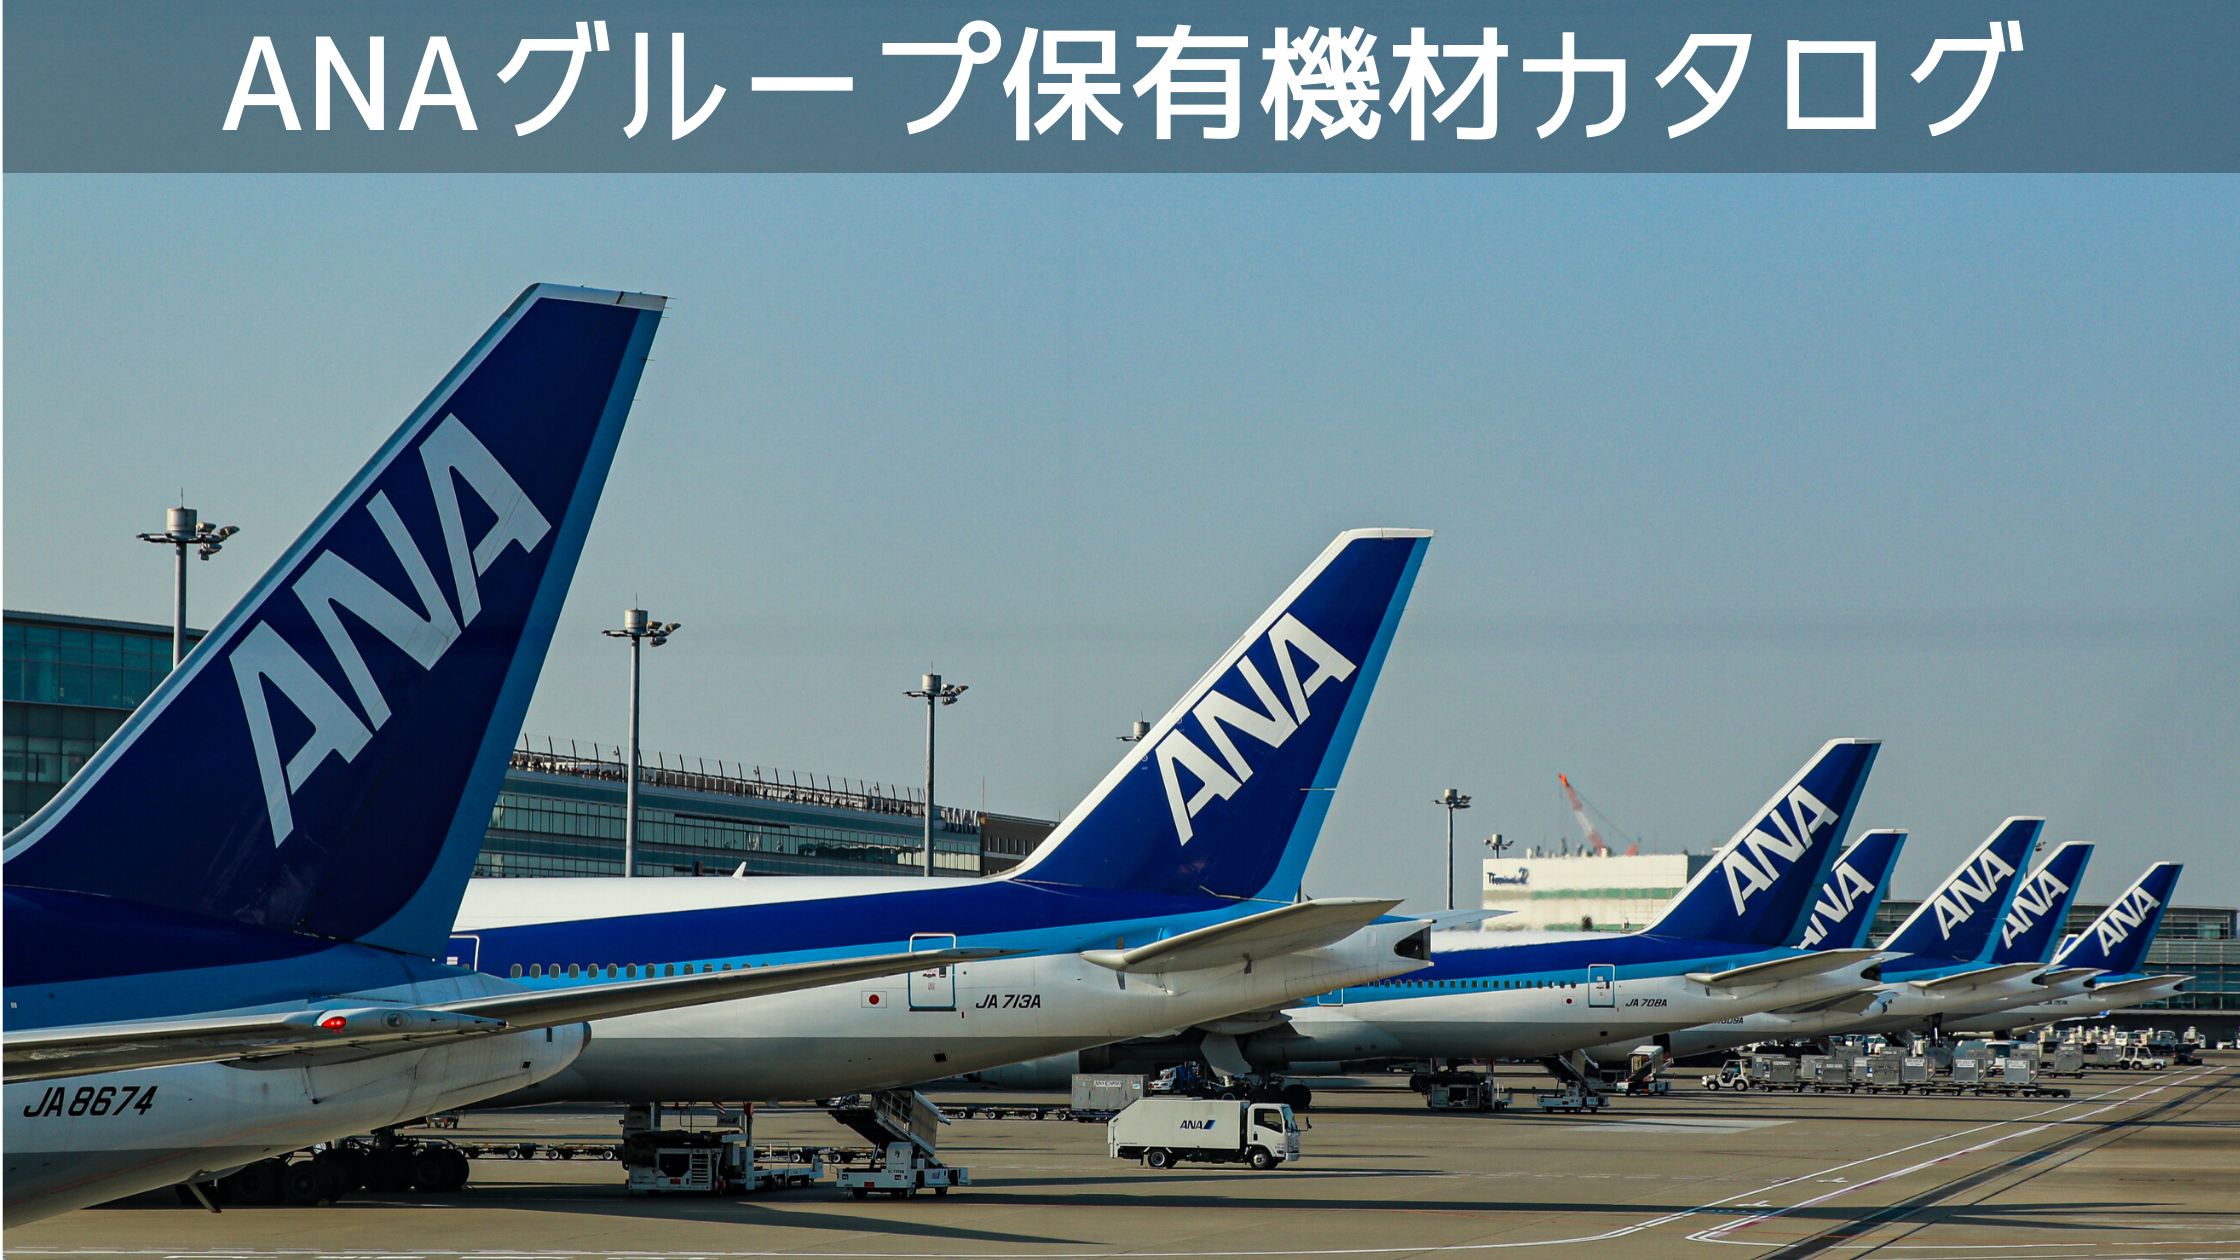 2021年10月最新版 全18種類 全日本空輸 Ana グループ保有機材フリートカタログ シテイリョウコウ